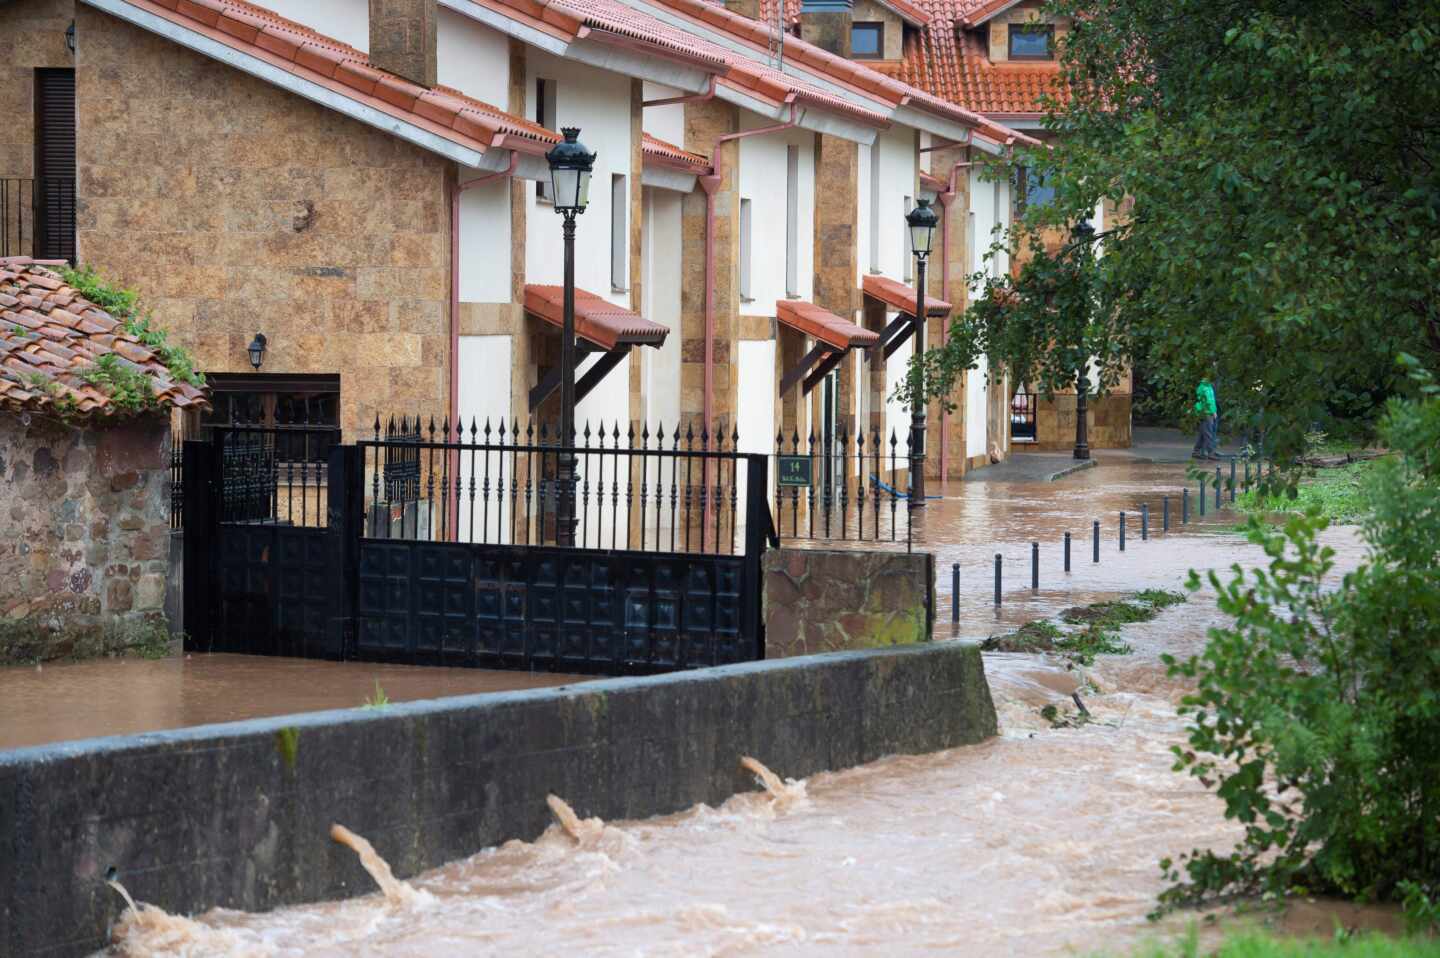 El temporal que ha golpeado a Cataluña y Baleares amenaza ahora al Cantábrico